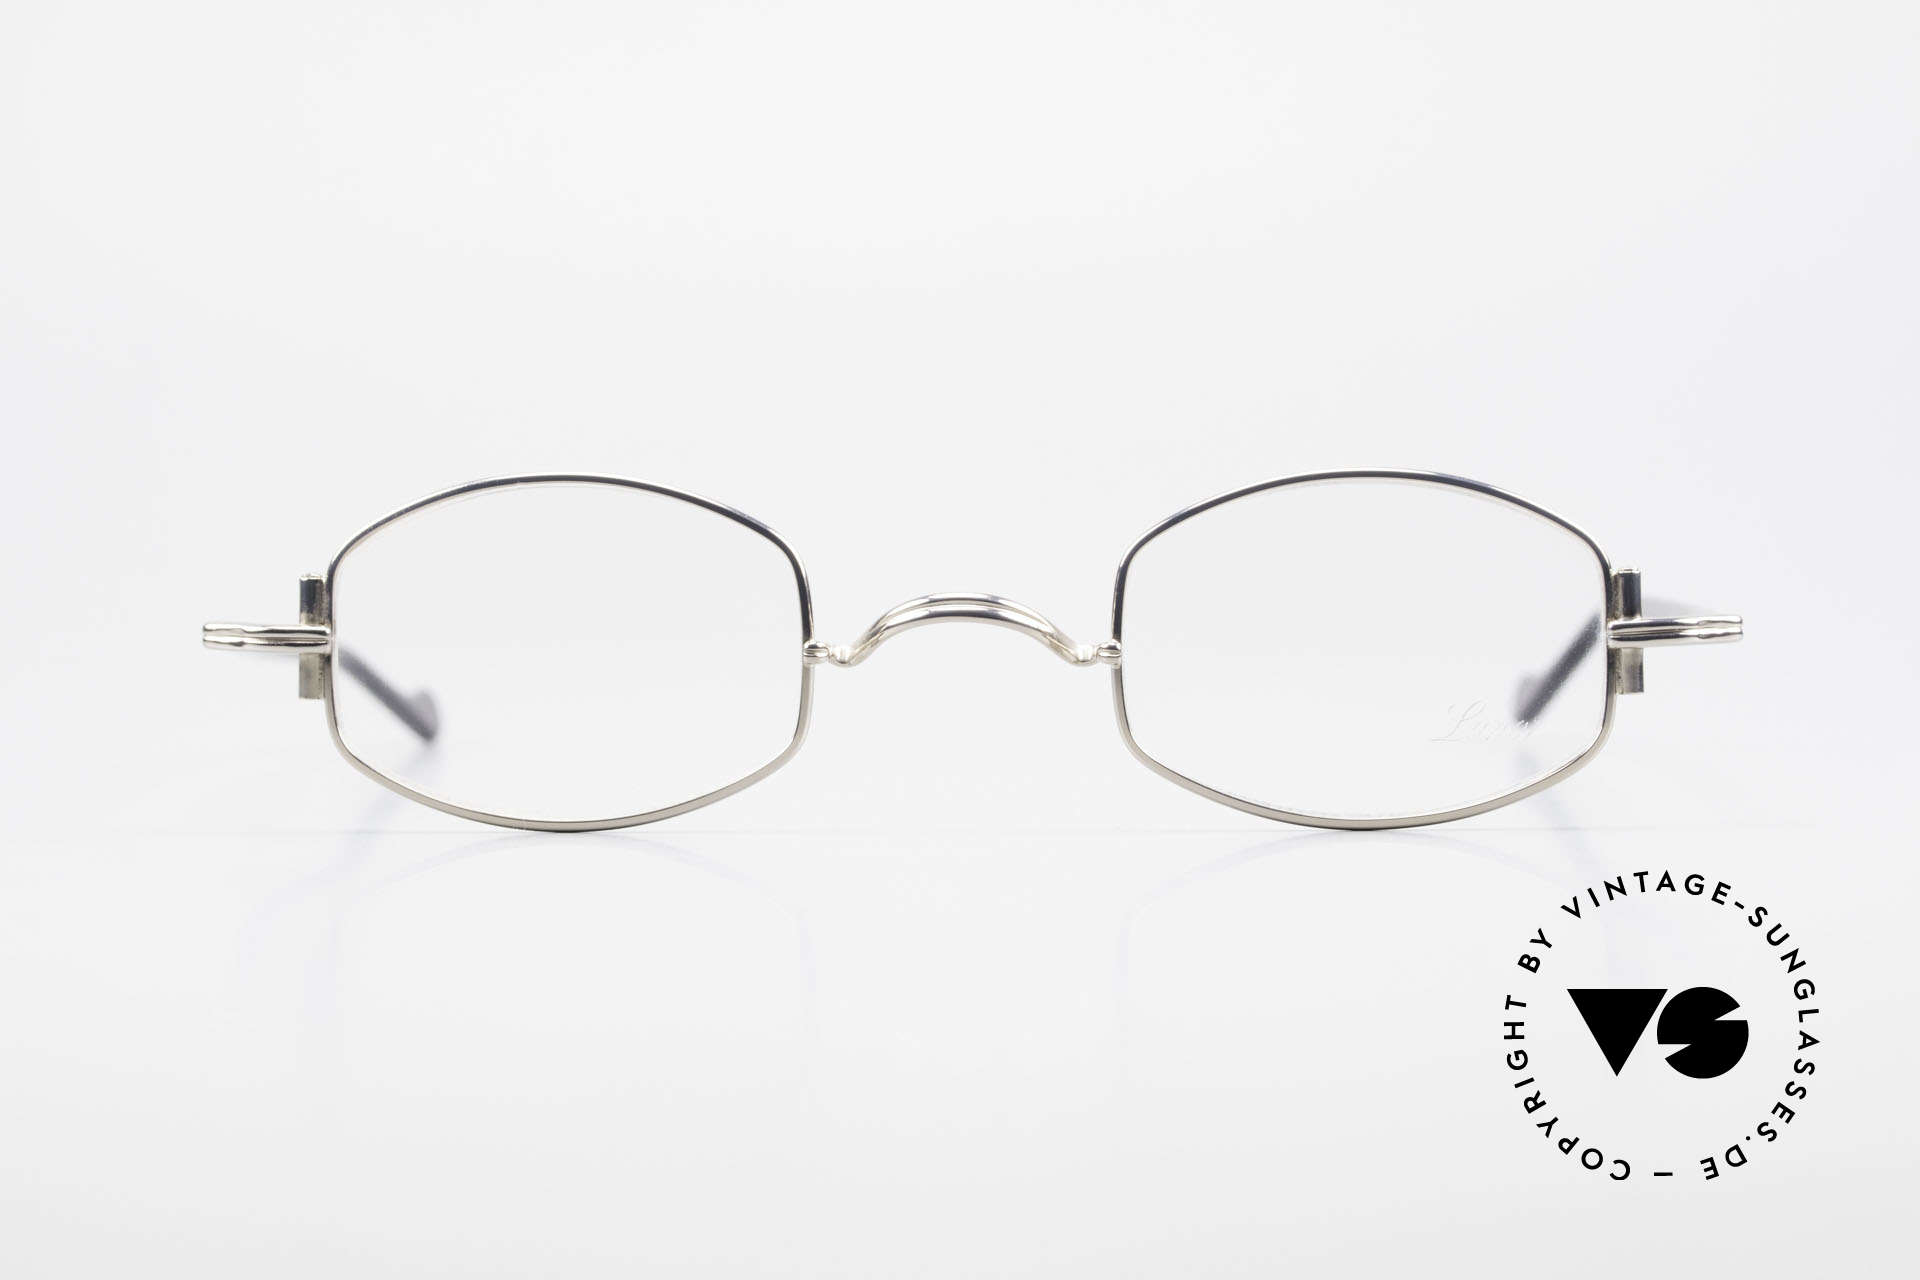 Glasses Lunor XA 03 No Retro Lunor Glasses Vintage